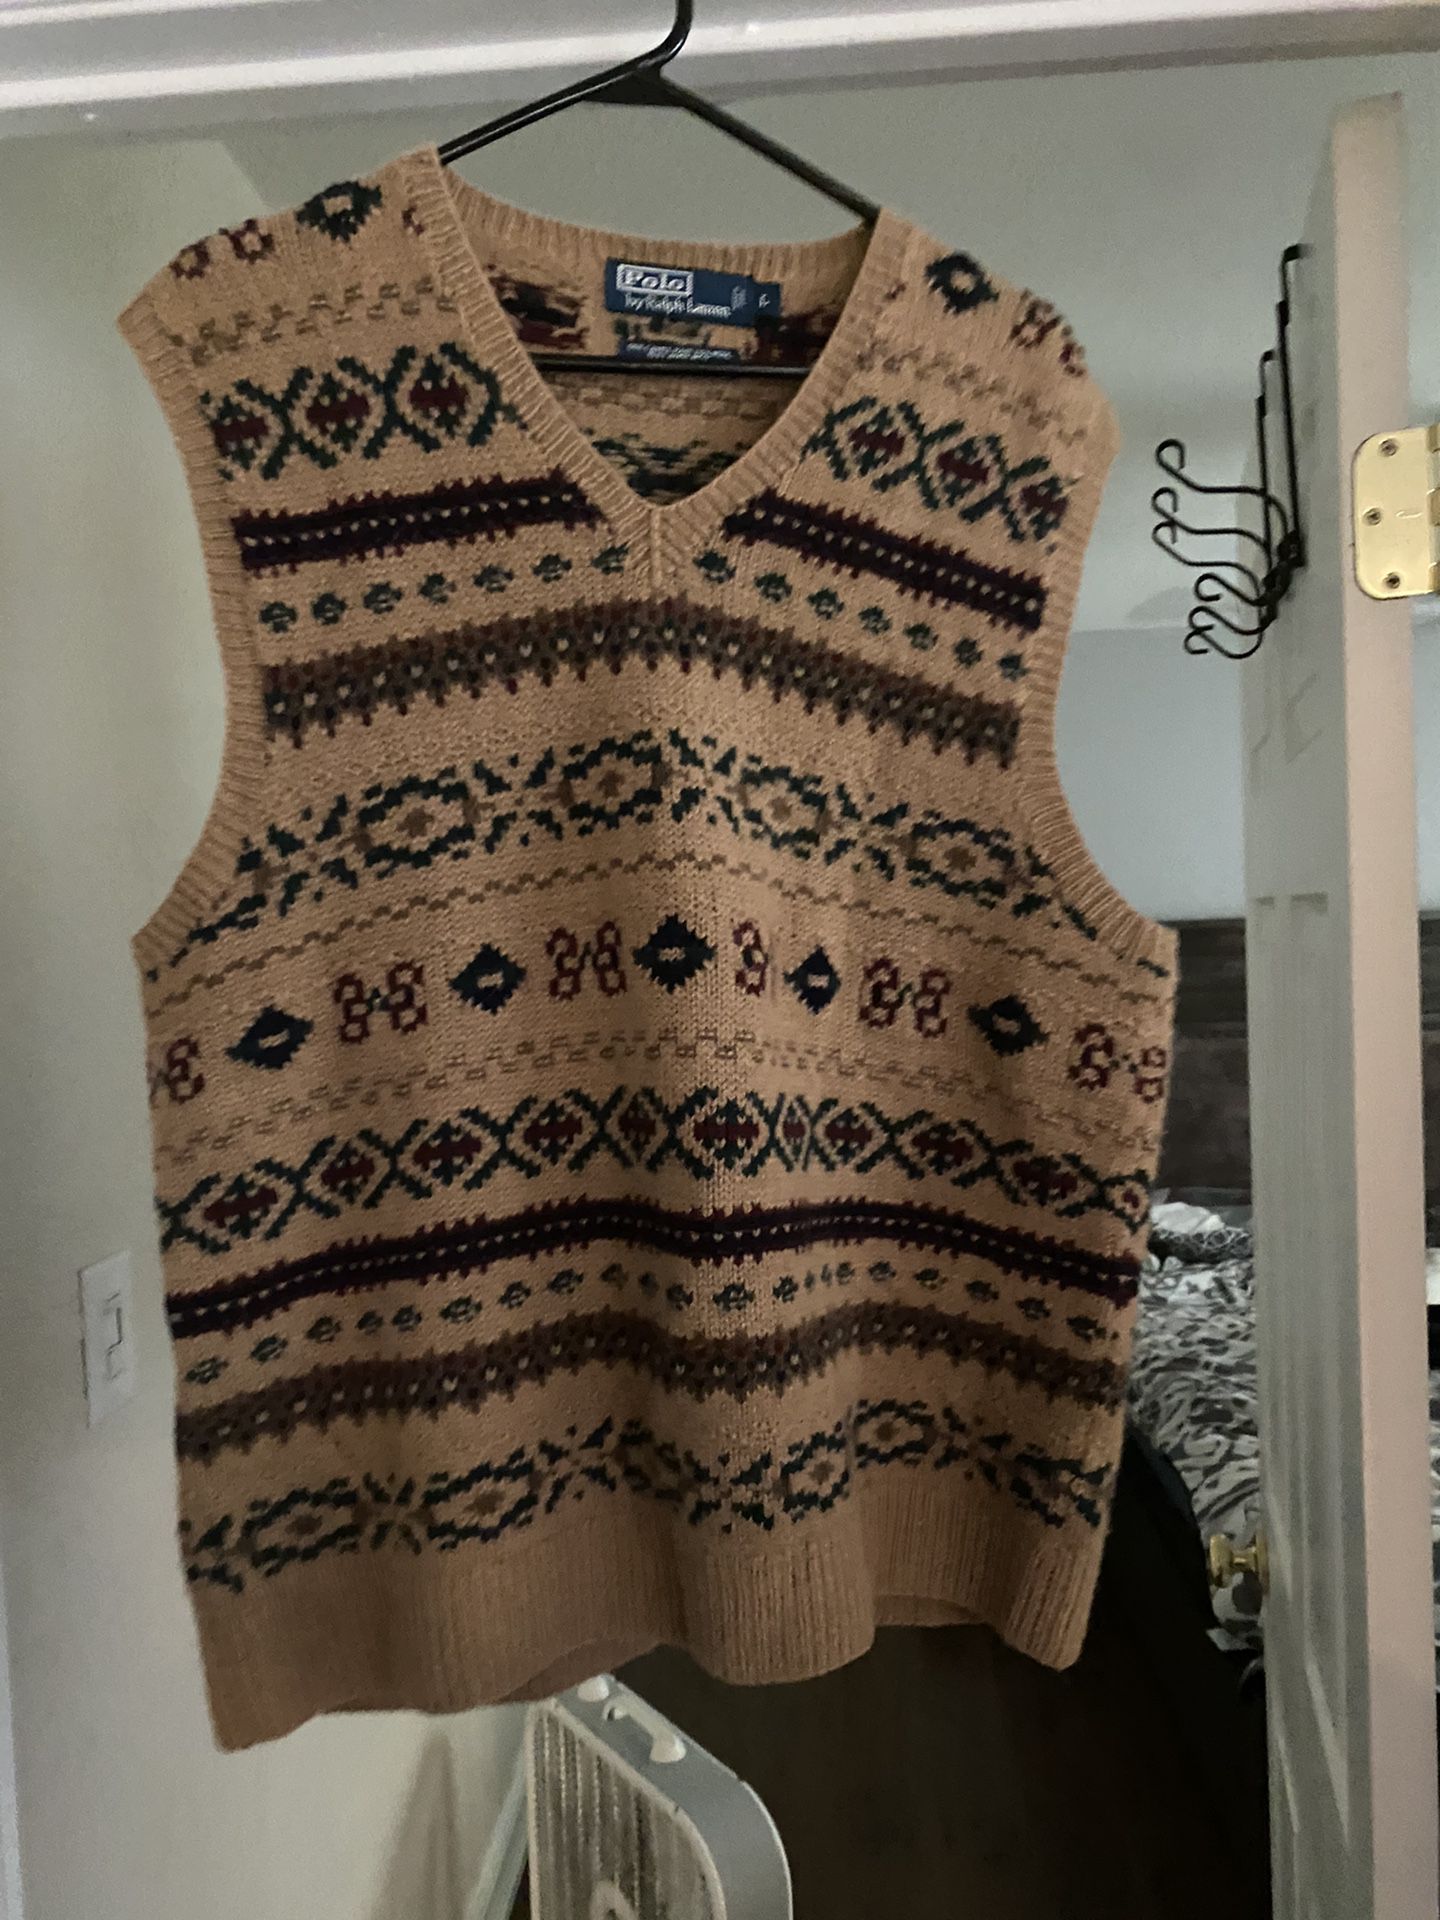 Ralph Lauren Polo sweater vest sz L, worn once